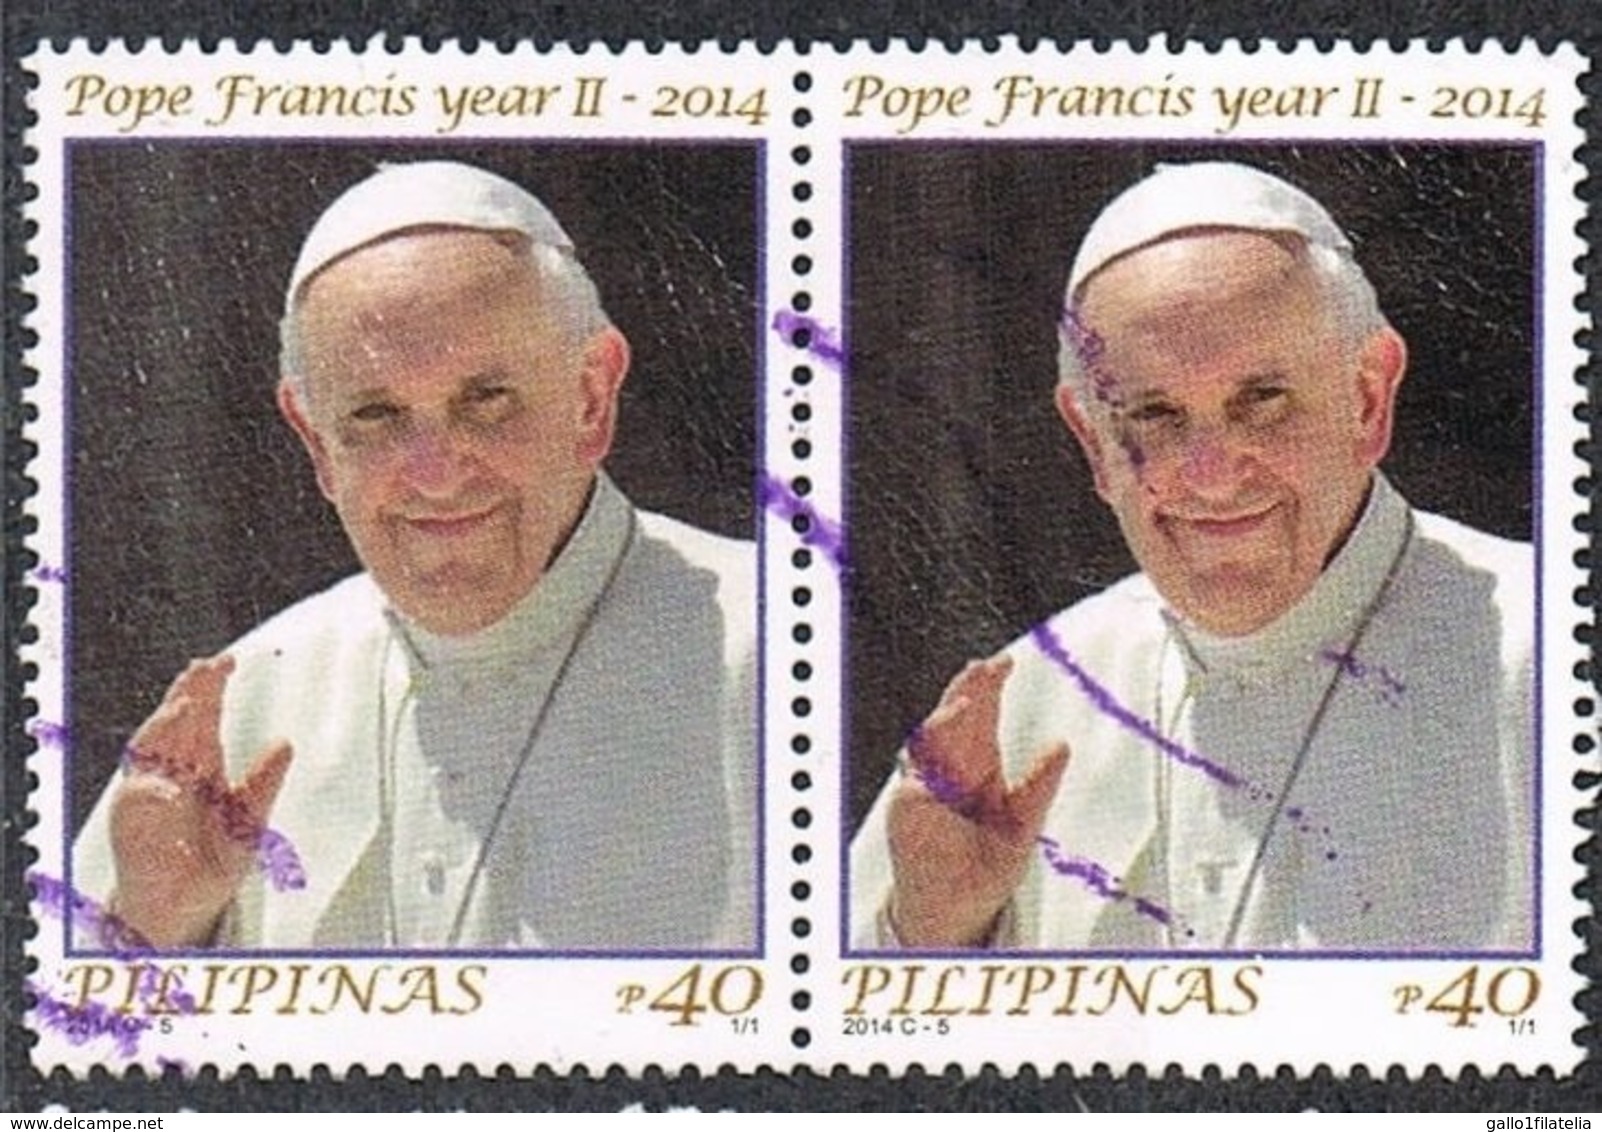 2014 - FILIPPINE / PHILIPPINES - PAPA FRANCESCO - PRIMO ANNO PONTIFICATO / FIRST ANN. OF POPE FRANCIS AS POPE. USATO - Emissioni Congiunte